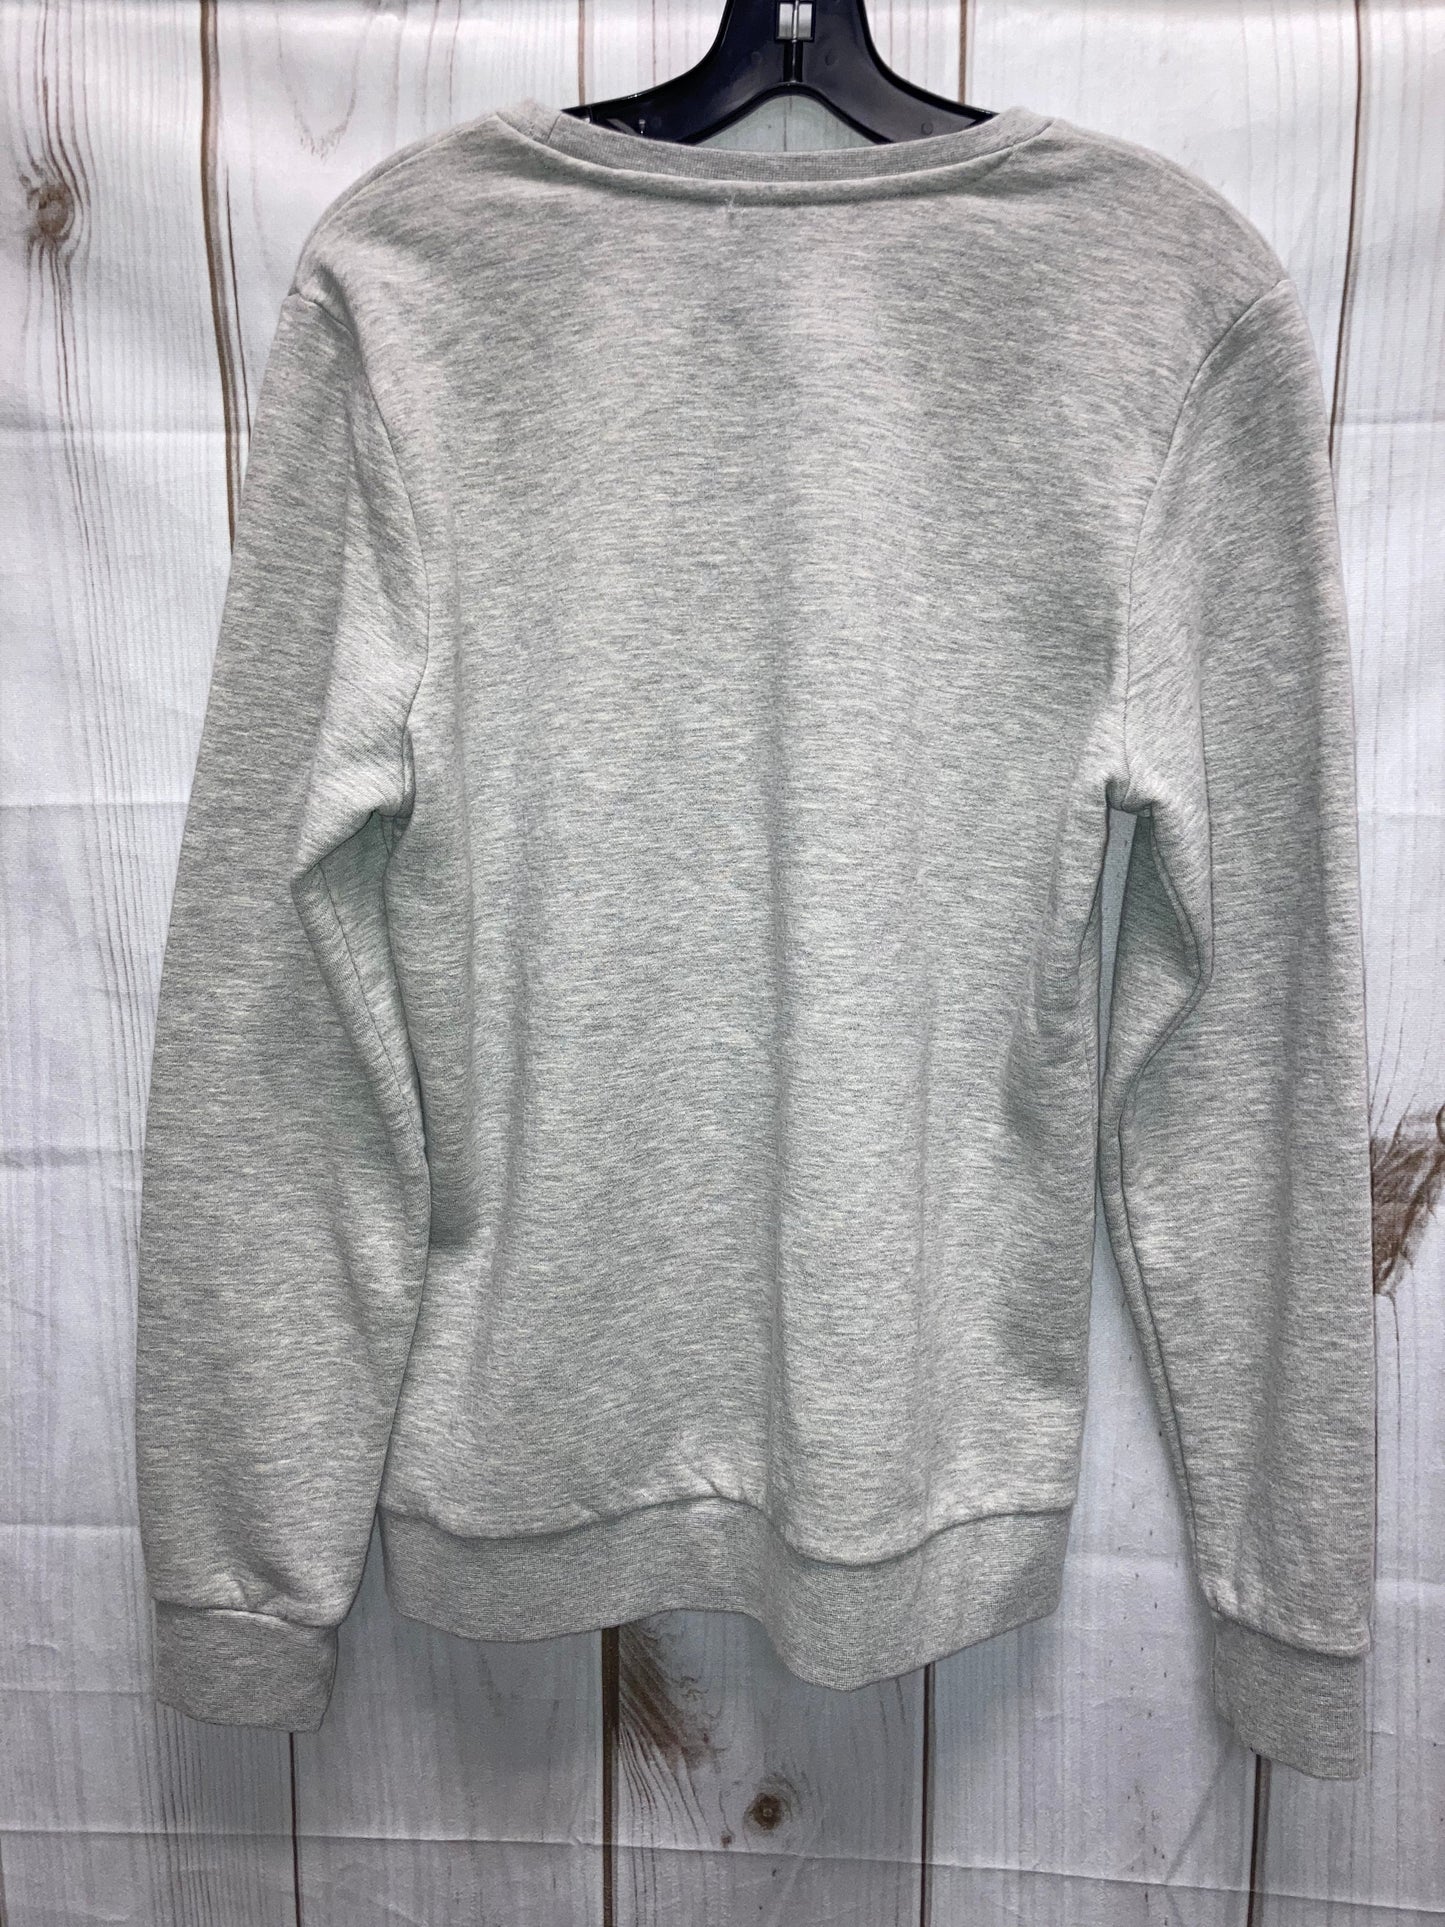 Sweatshirt Crewneck By Adidas  Size: L